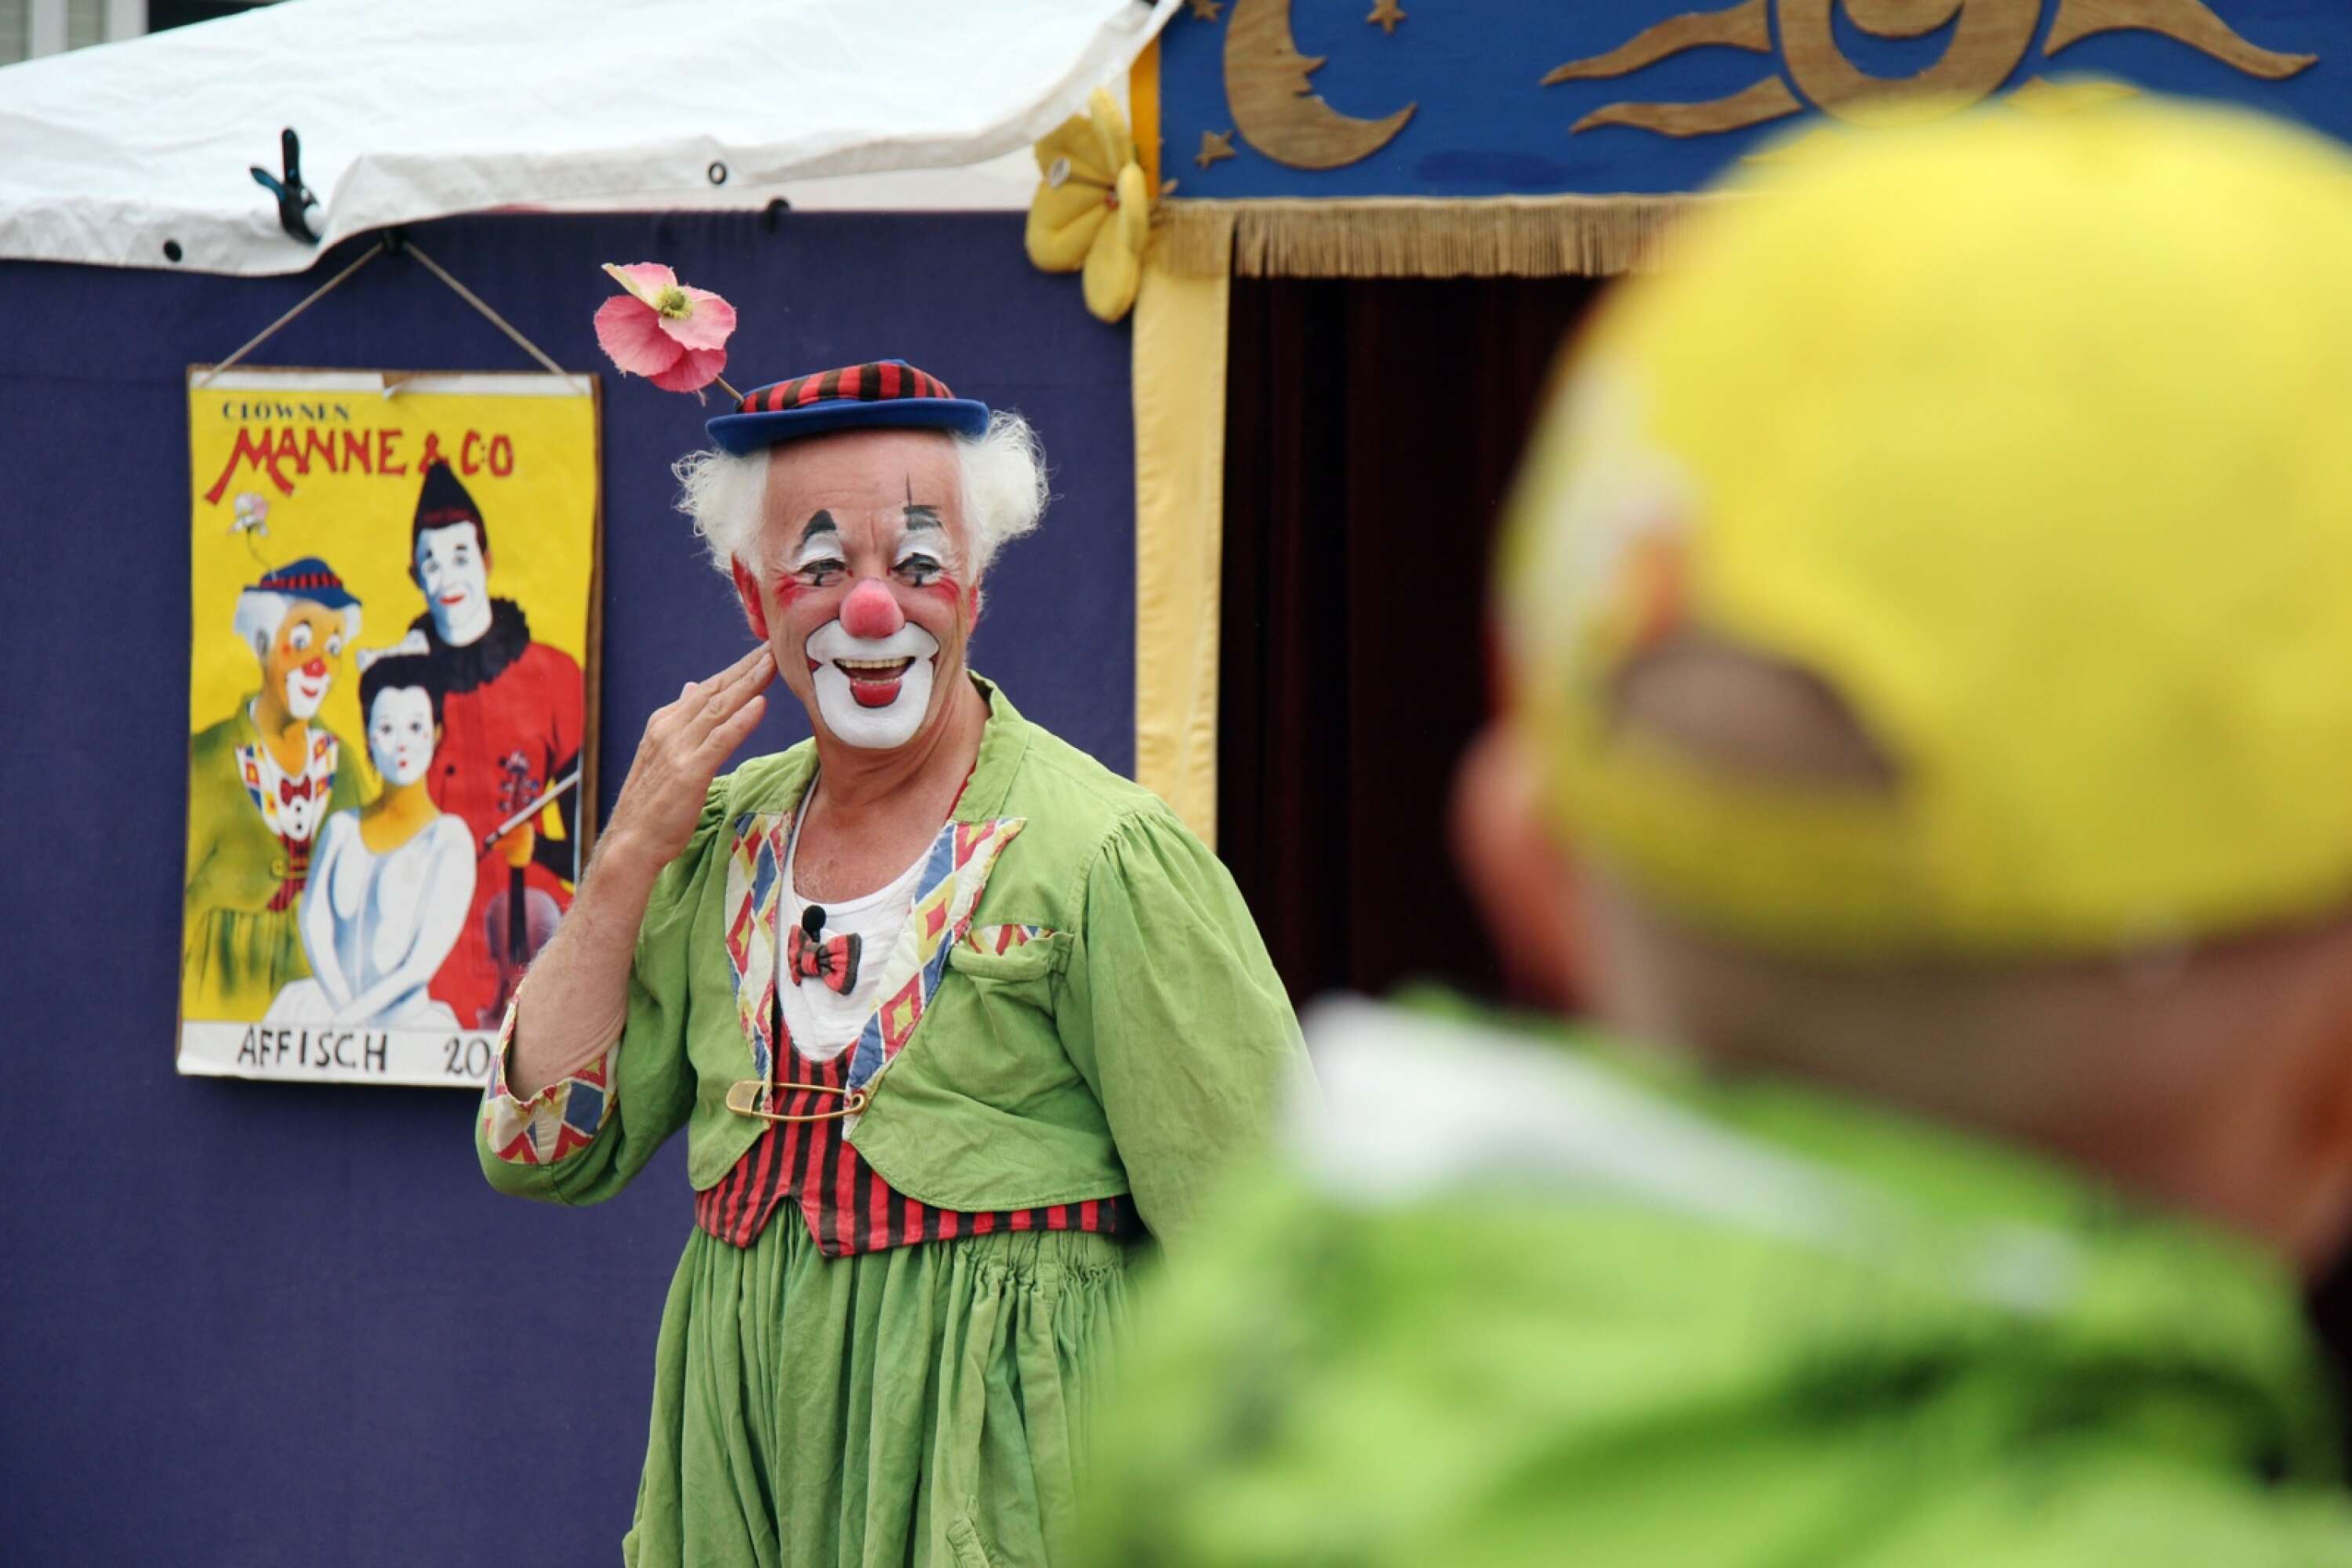 Manne af Klintberg, som framträder som clownen Manne, får medaljen Litteris et artibus. 